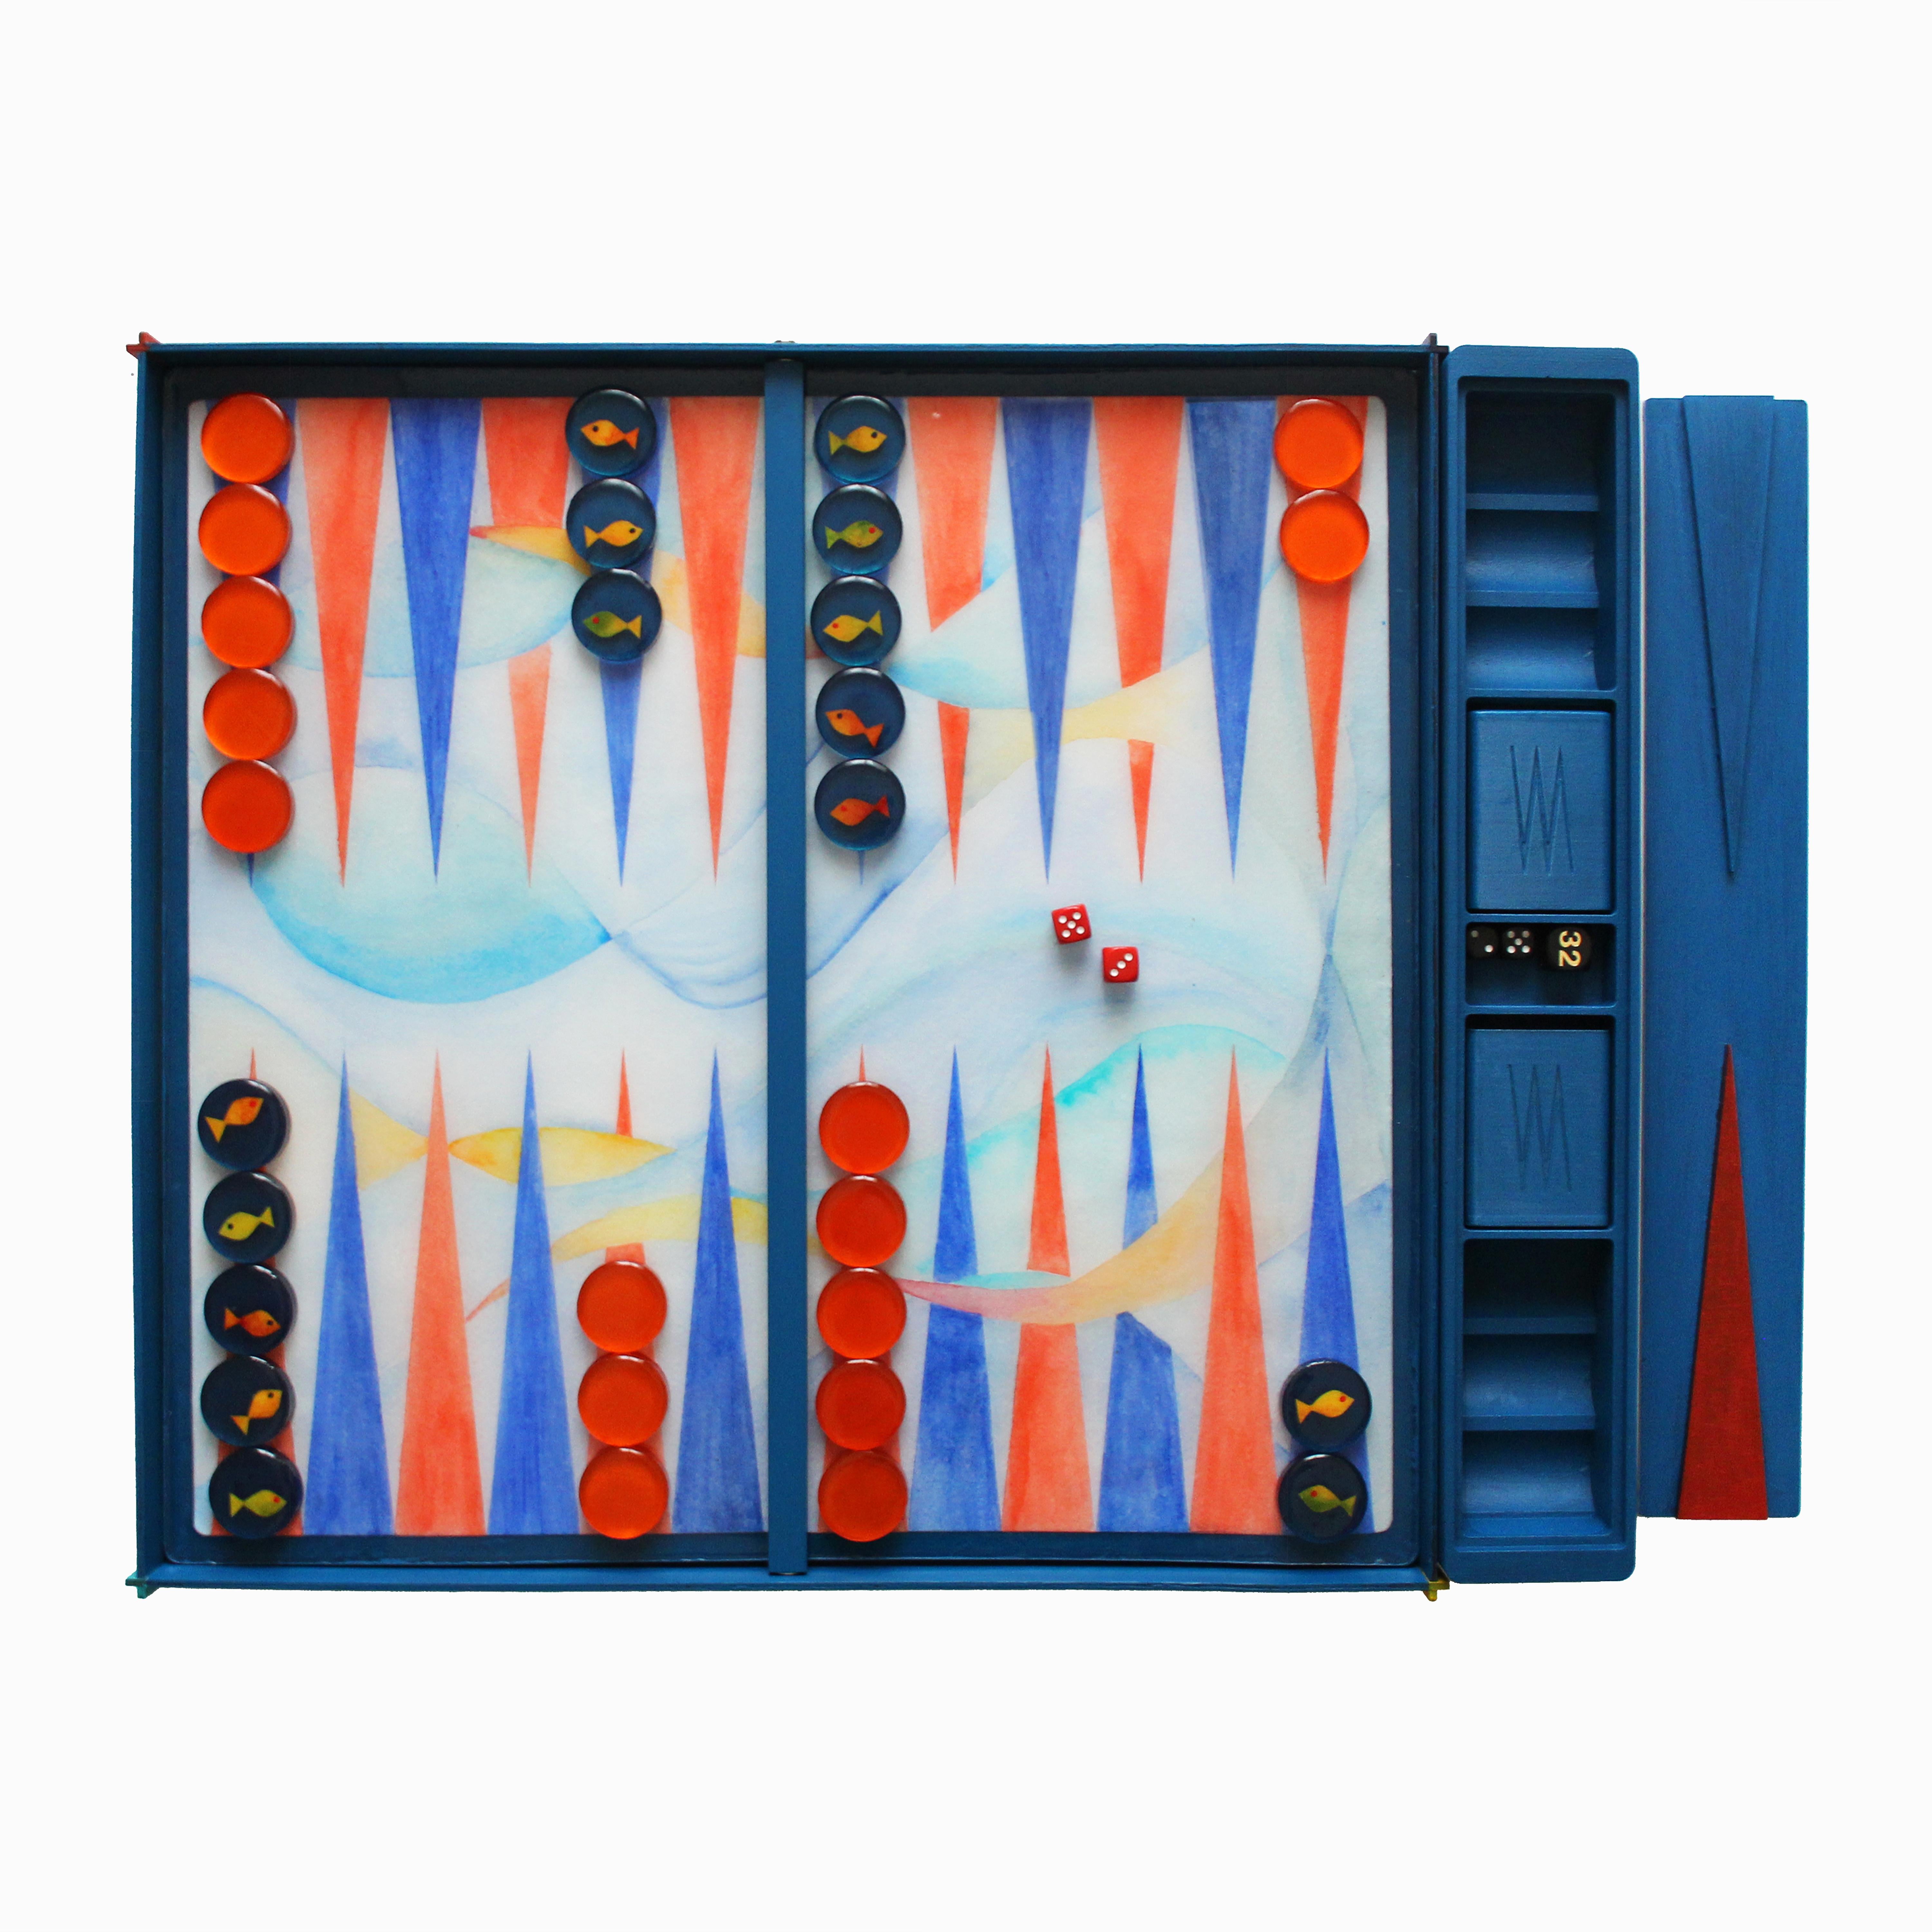 La planche de backgammon est une collection limitée (100 pièces) faite à la main et conçue par la jeune milanaise Valeria Molinari pour Dilmos Edizioni. Le projet, composé de quatre planches inspirées des éléments de l'eau, de l'air, du feu et de la